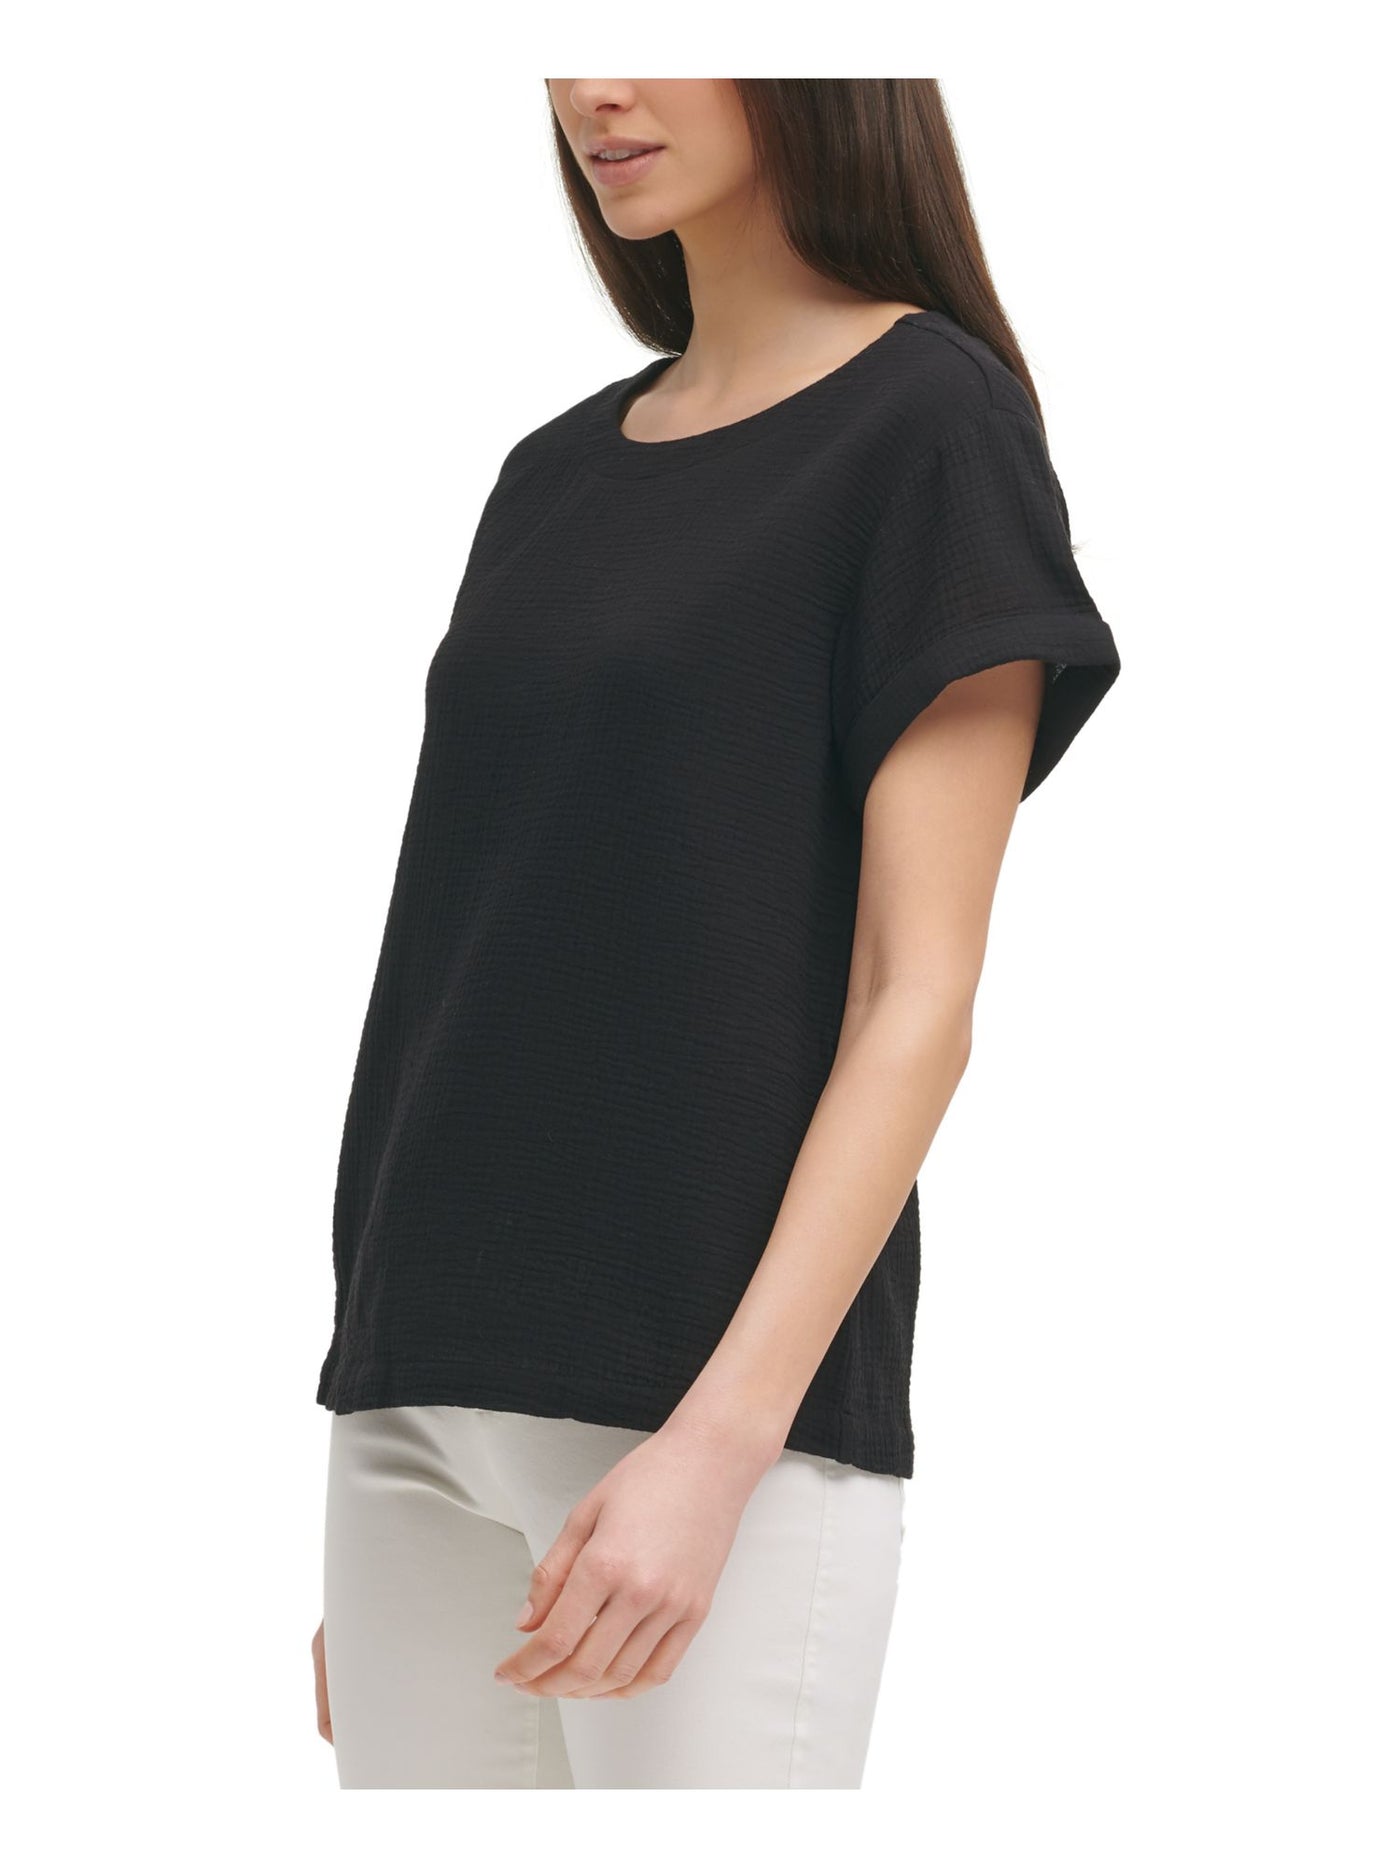 CALVIN KLEIN Womens Black Cotton Textured Short Cuffed Sleeves Gauze Round Neck Top XS